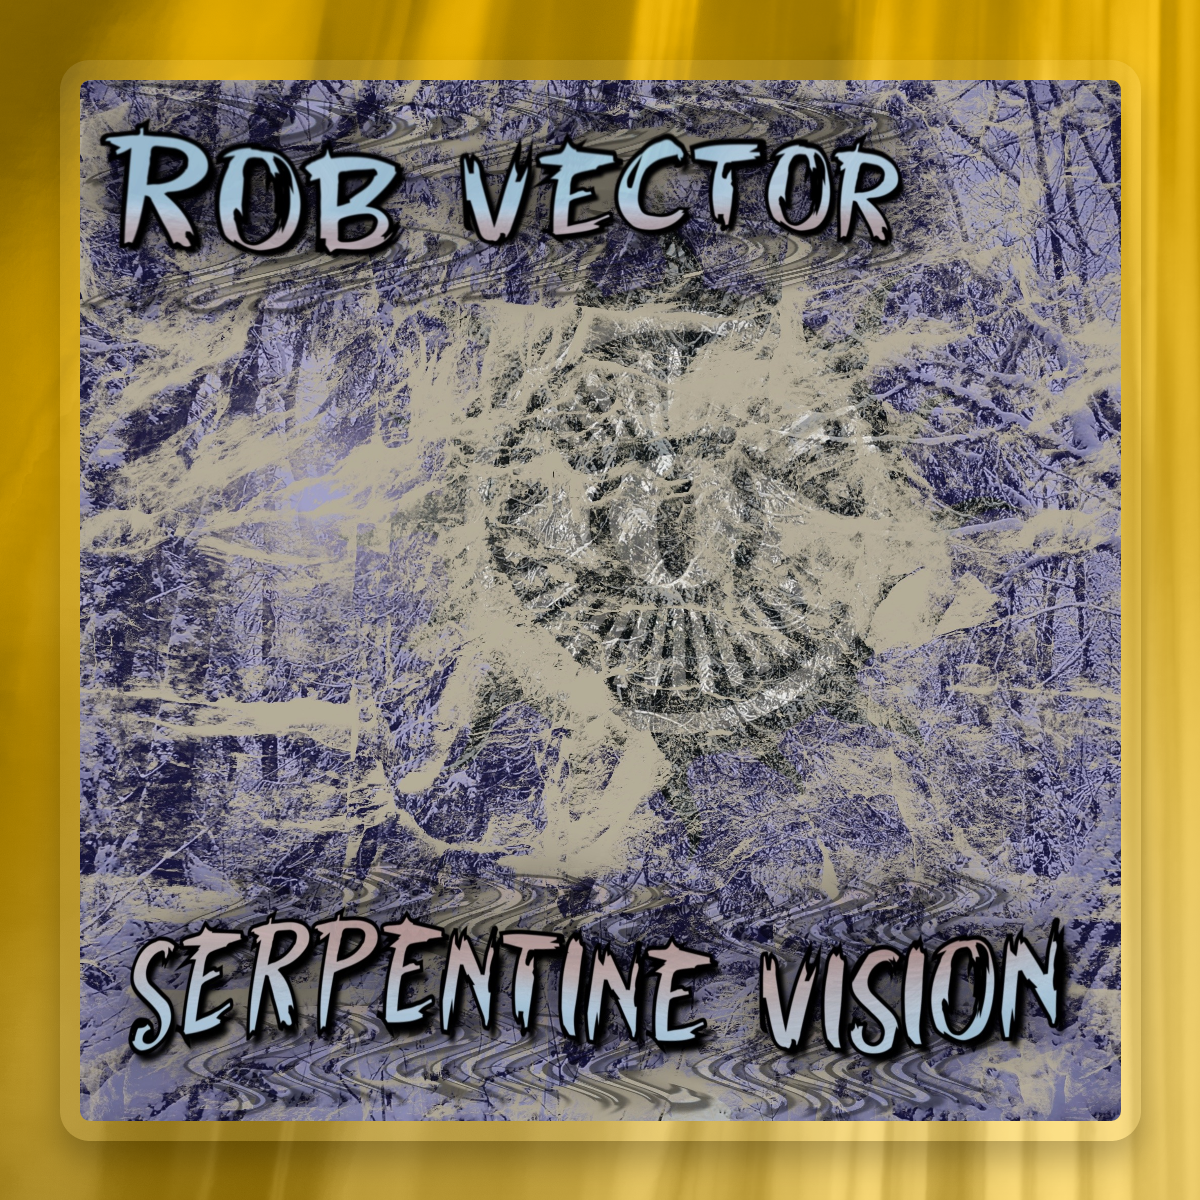 Serpentine Vision